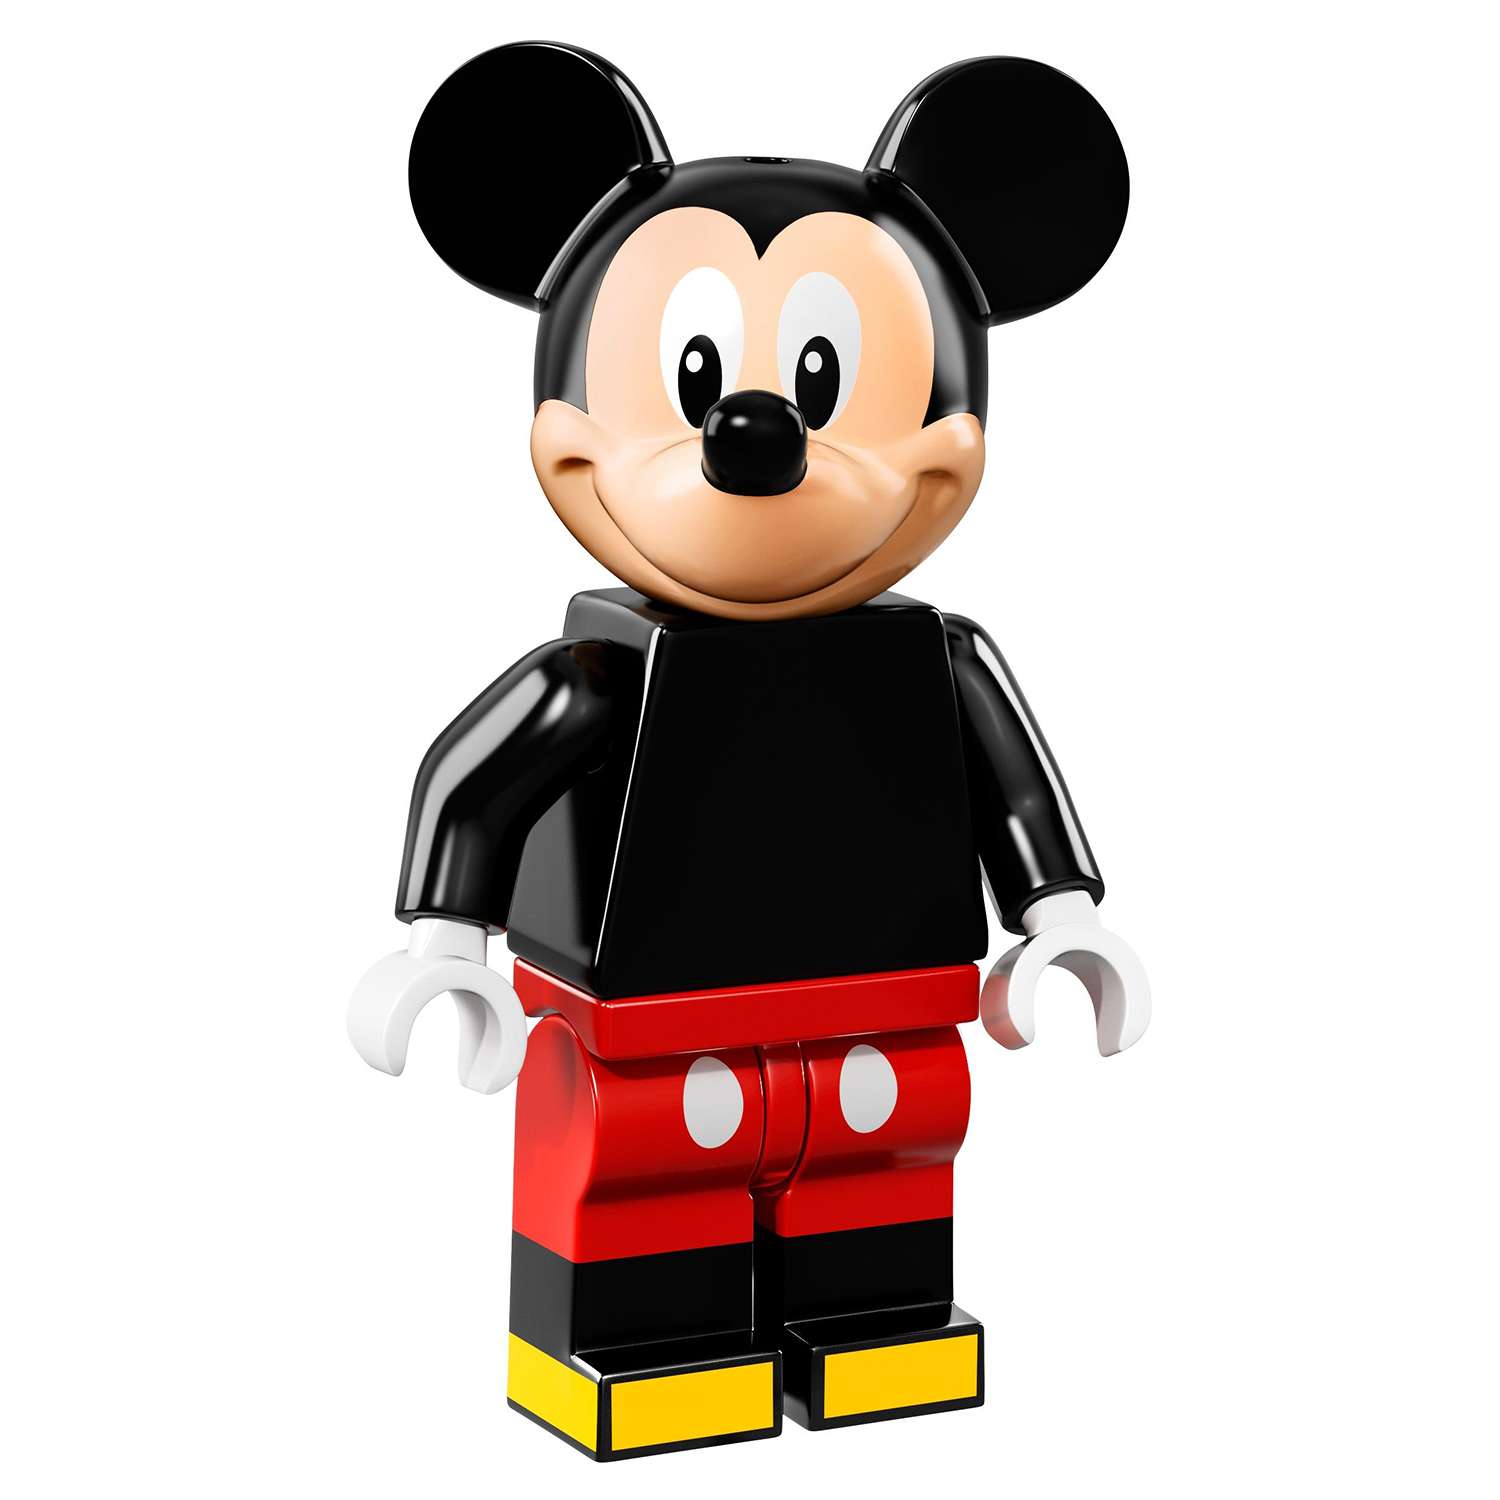 Конструктор LEGO Minifigures Минифигурки LEGO®, серия Дисней (71012) - фото 30